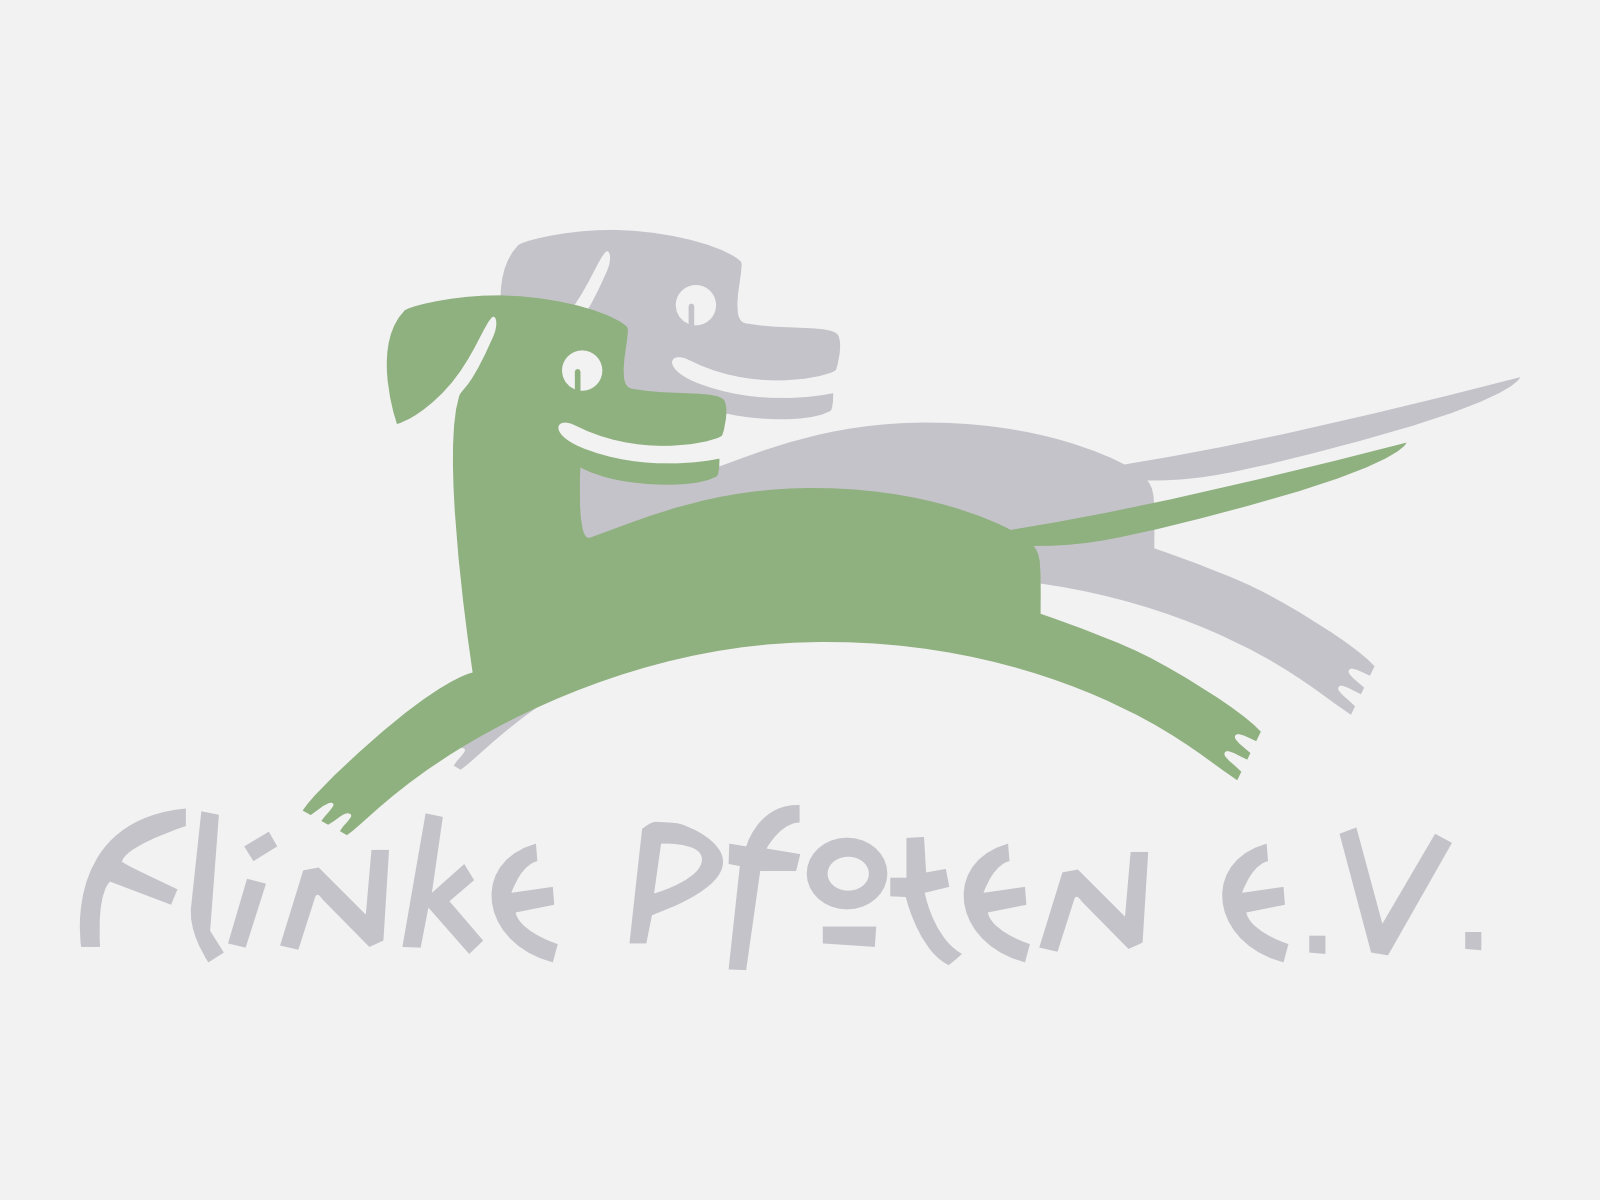 flinke-pfoten-logo-platzhalter-weiss